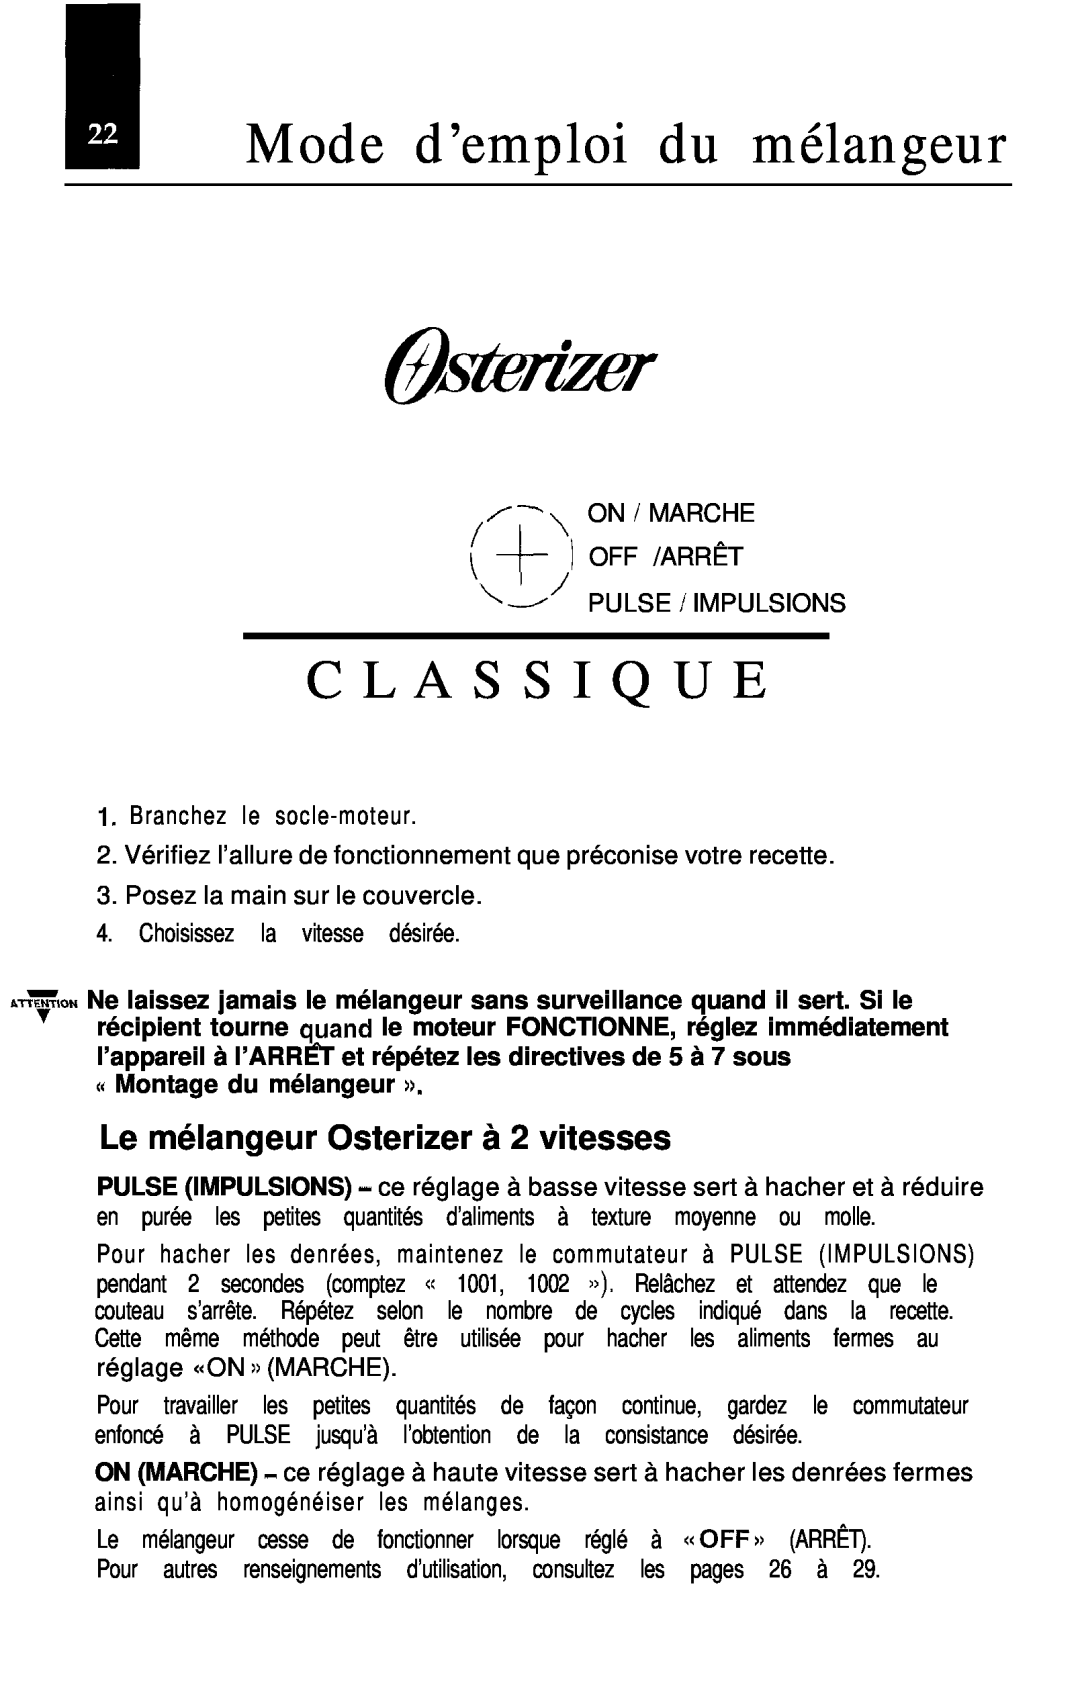 Oster Classic blender manual I Mode d’emploi du mélangeur, C L A S S I Q U E, Le mélangeur Osterizer à 2 vitesses 